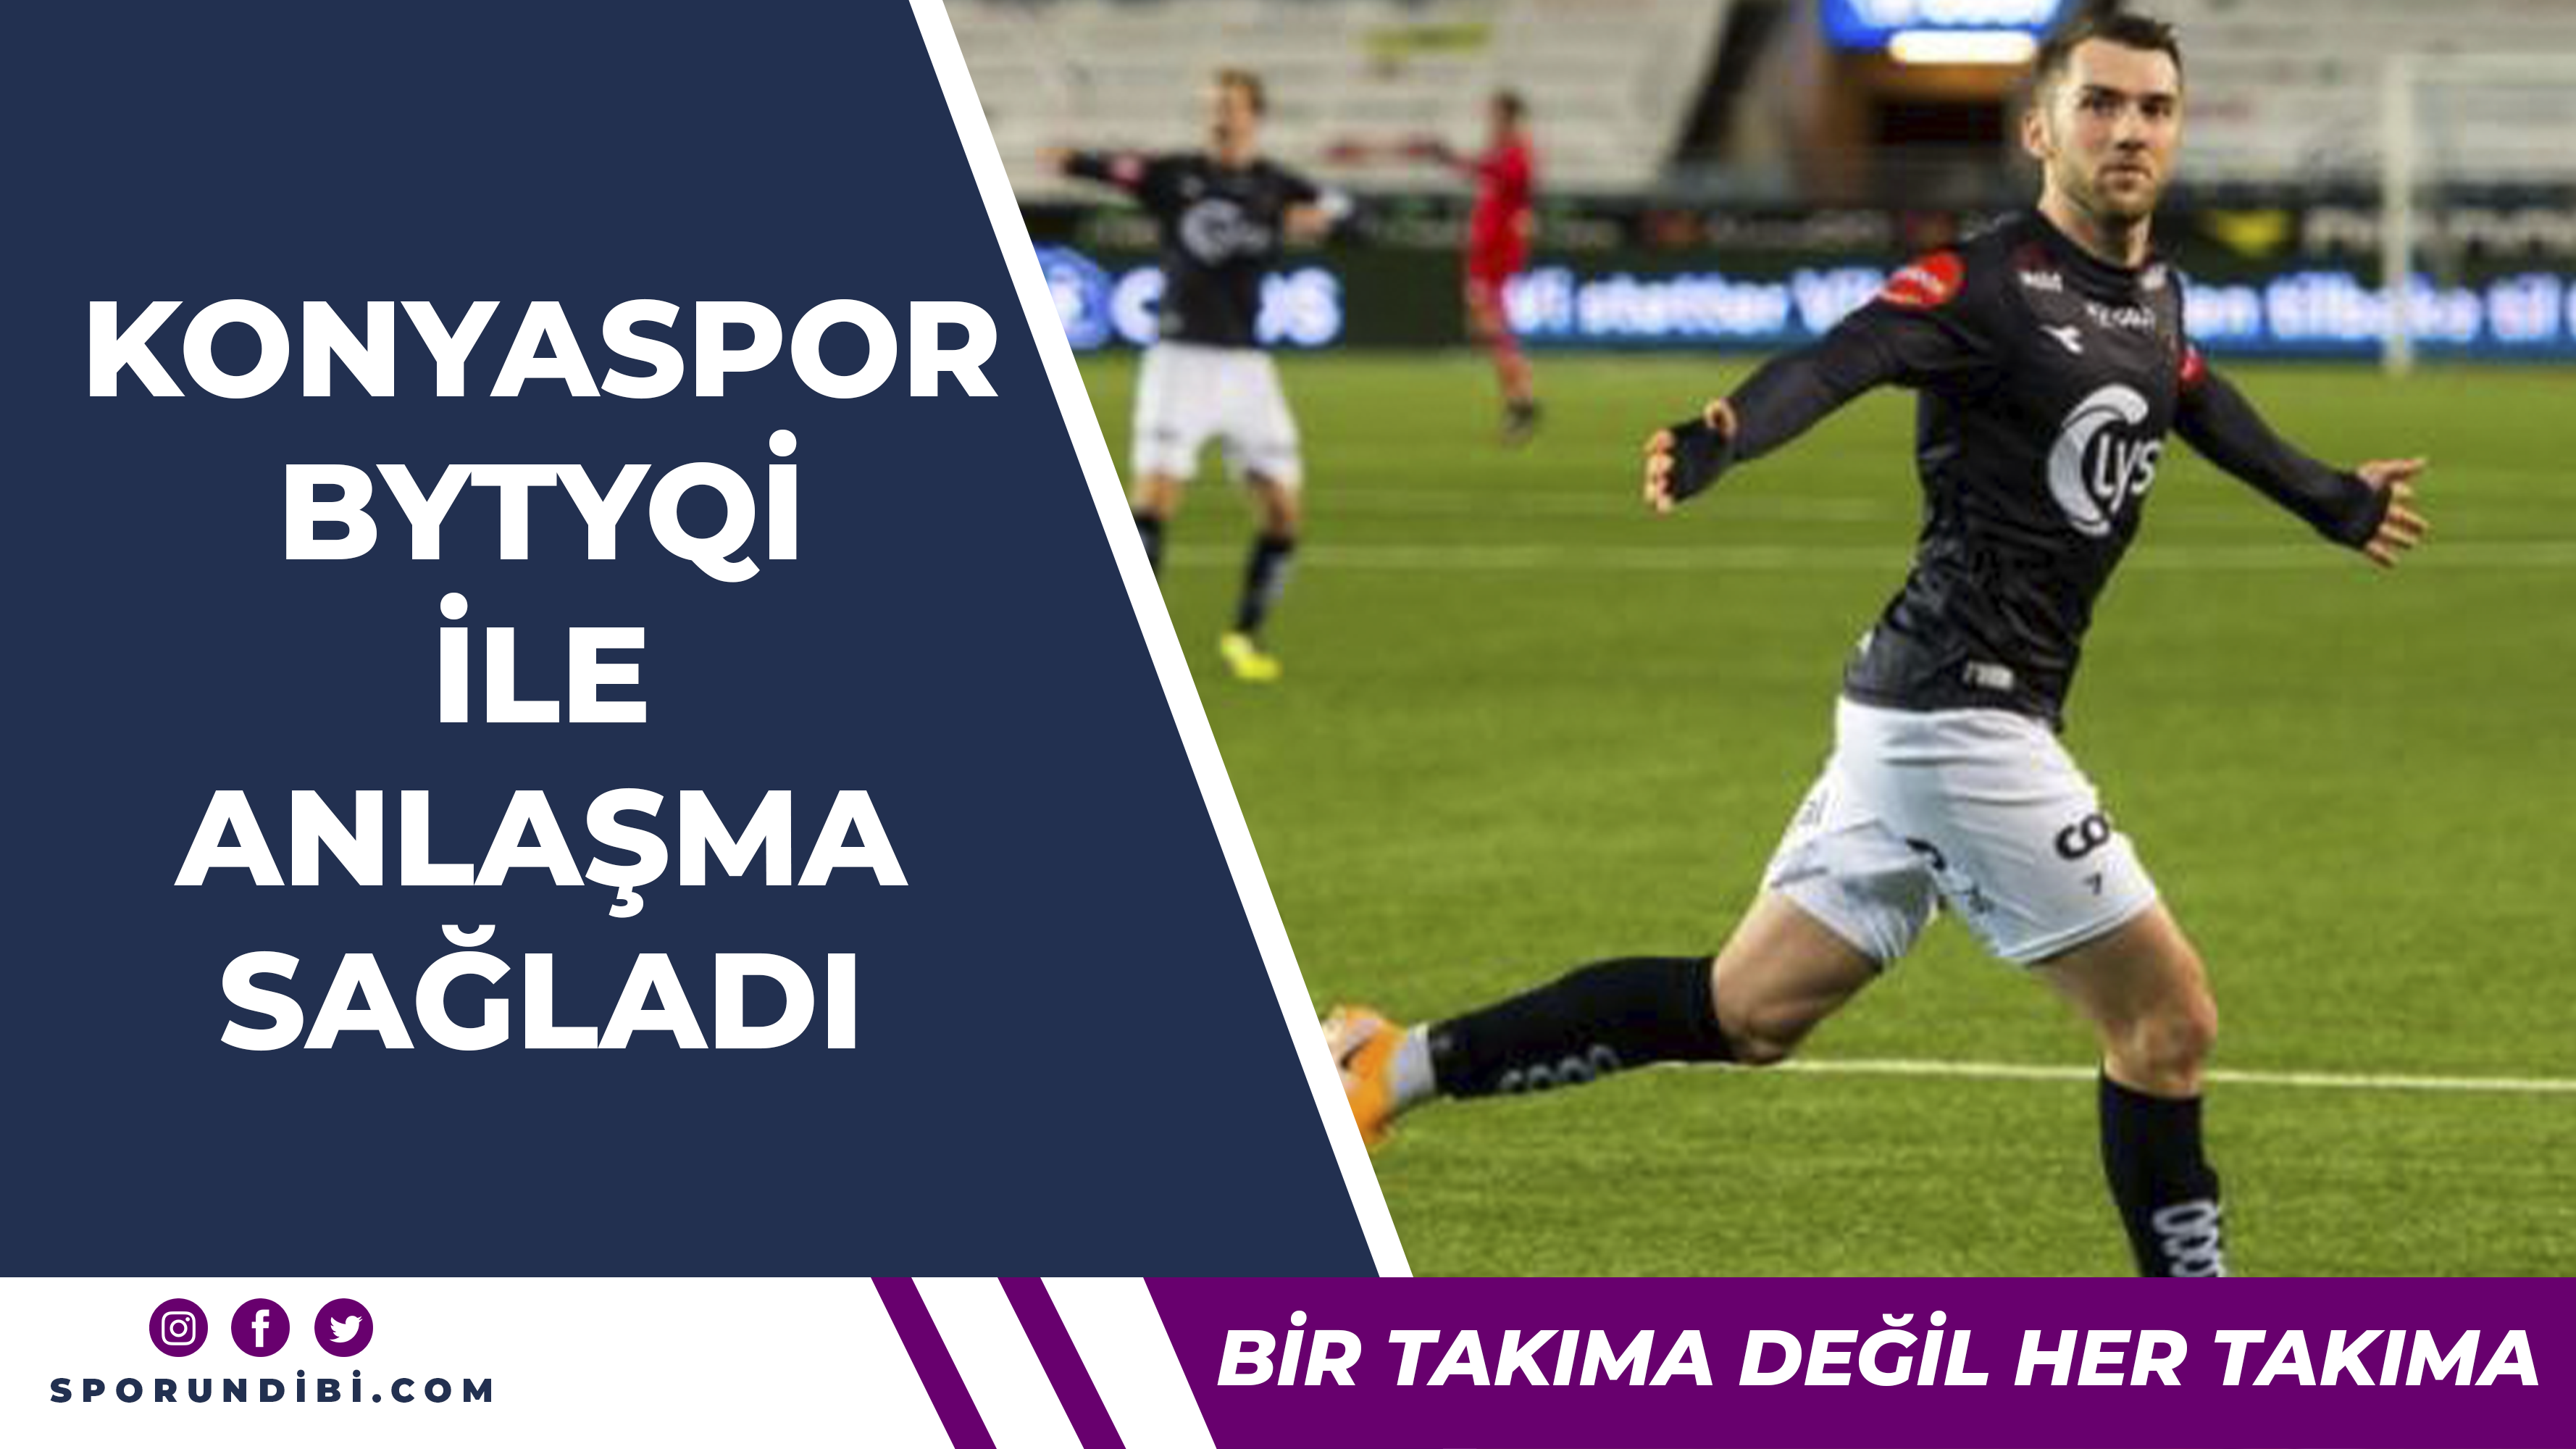 Konyaspor, Zymer Bytyqi ile anlaşma sağladı